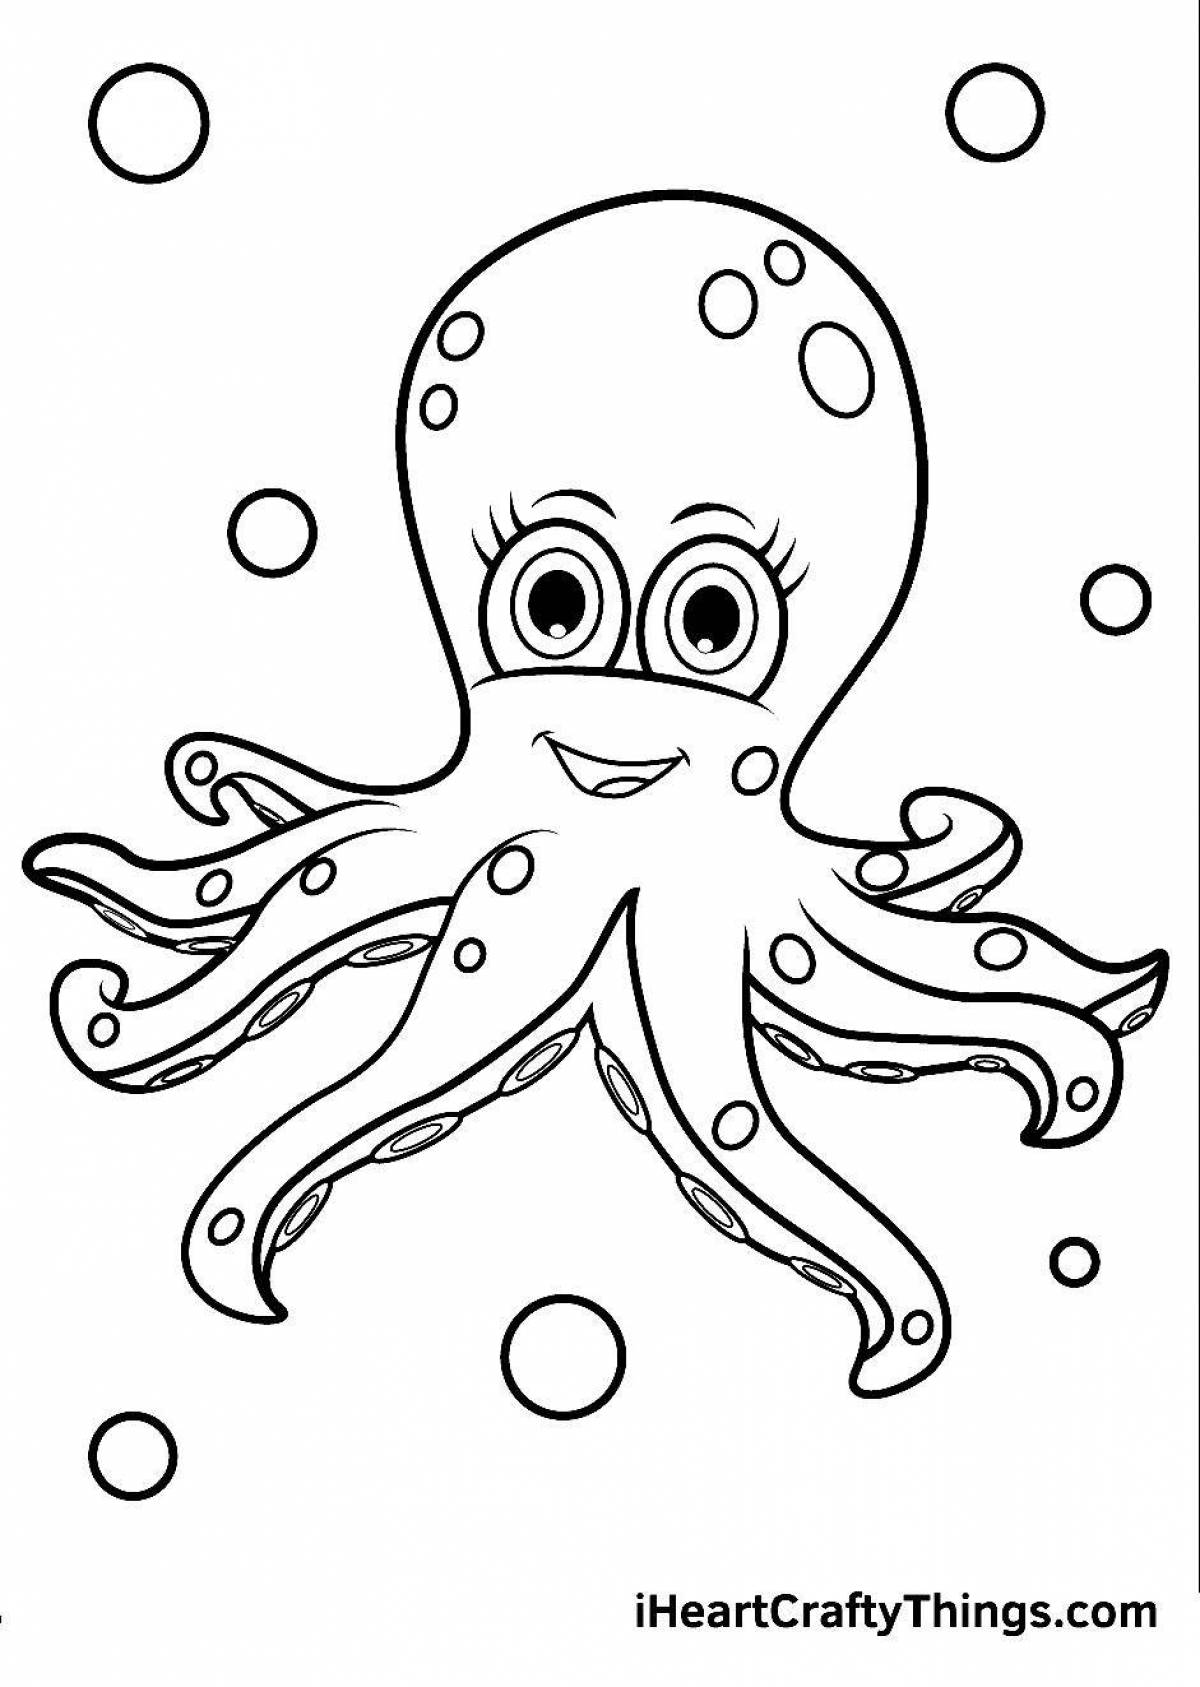 Увлекательная раскраска осьминог для малышей